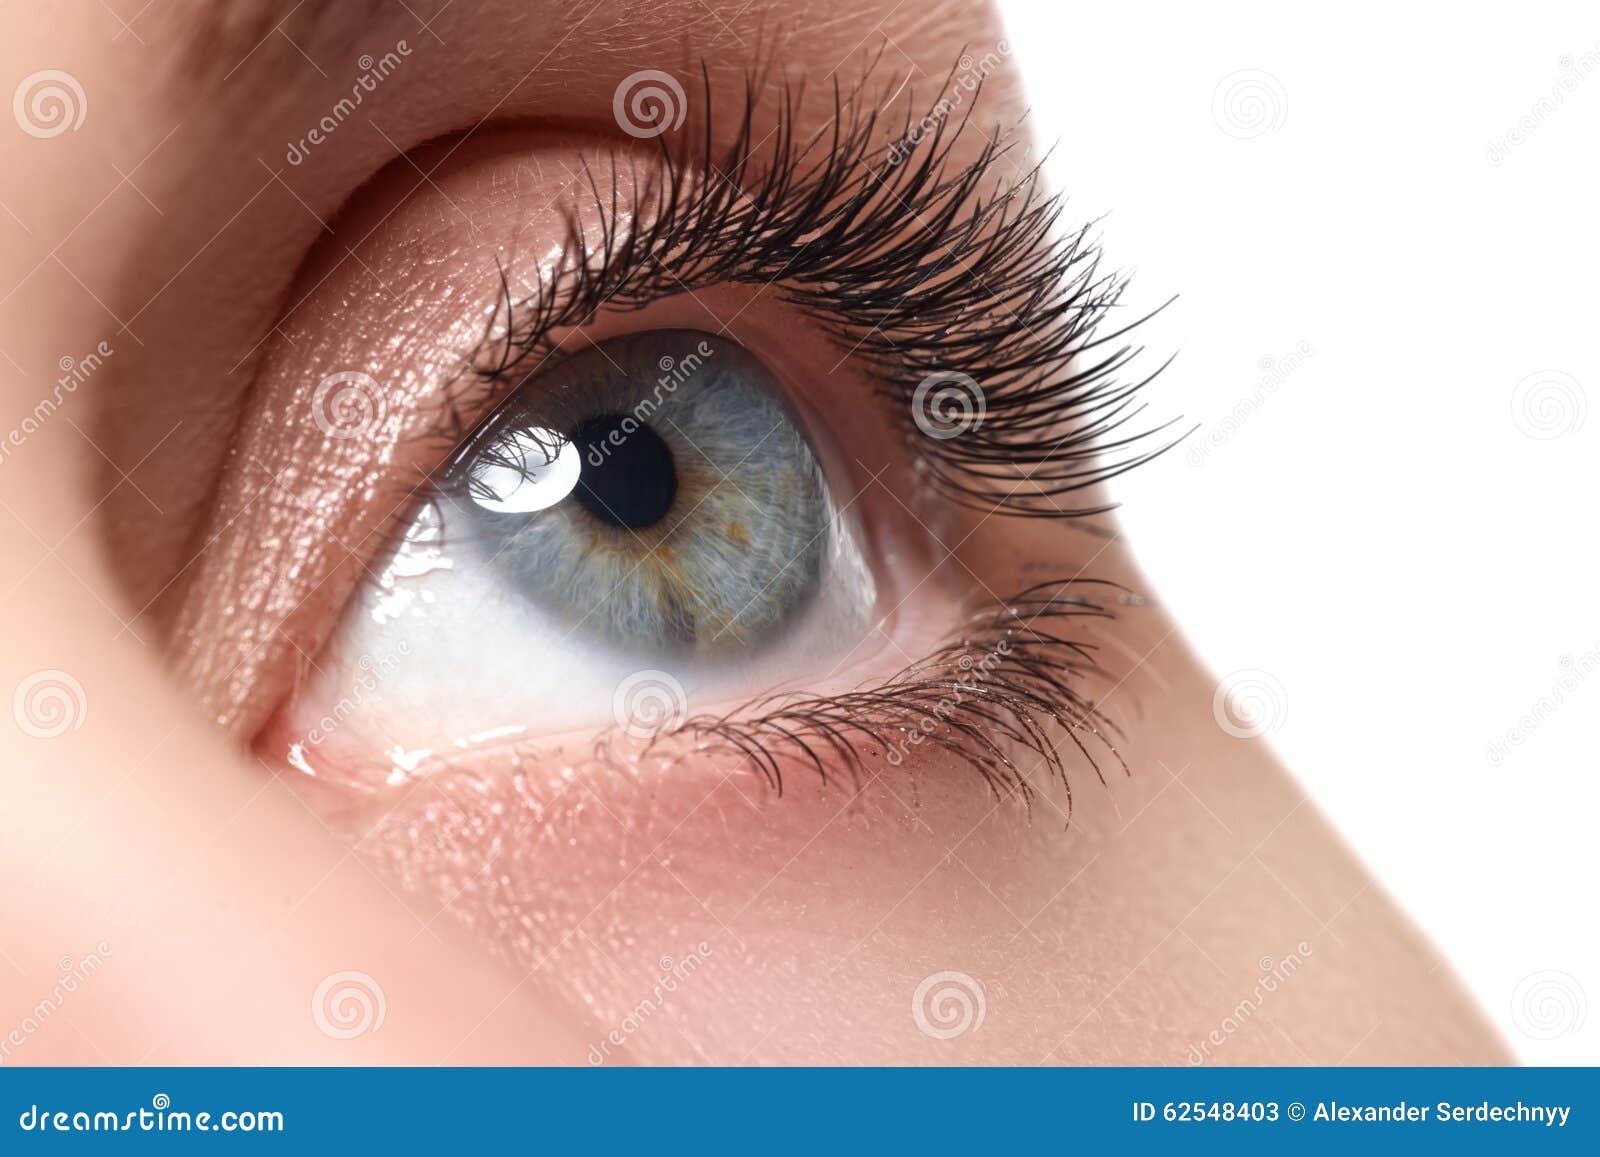 macro shot of woman's beautiful eye with extremely long eyelashes